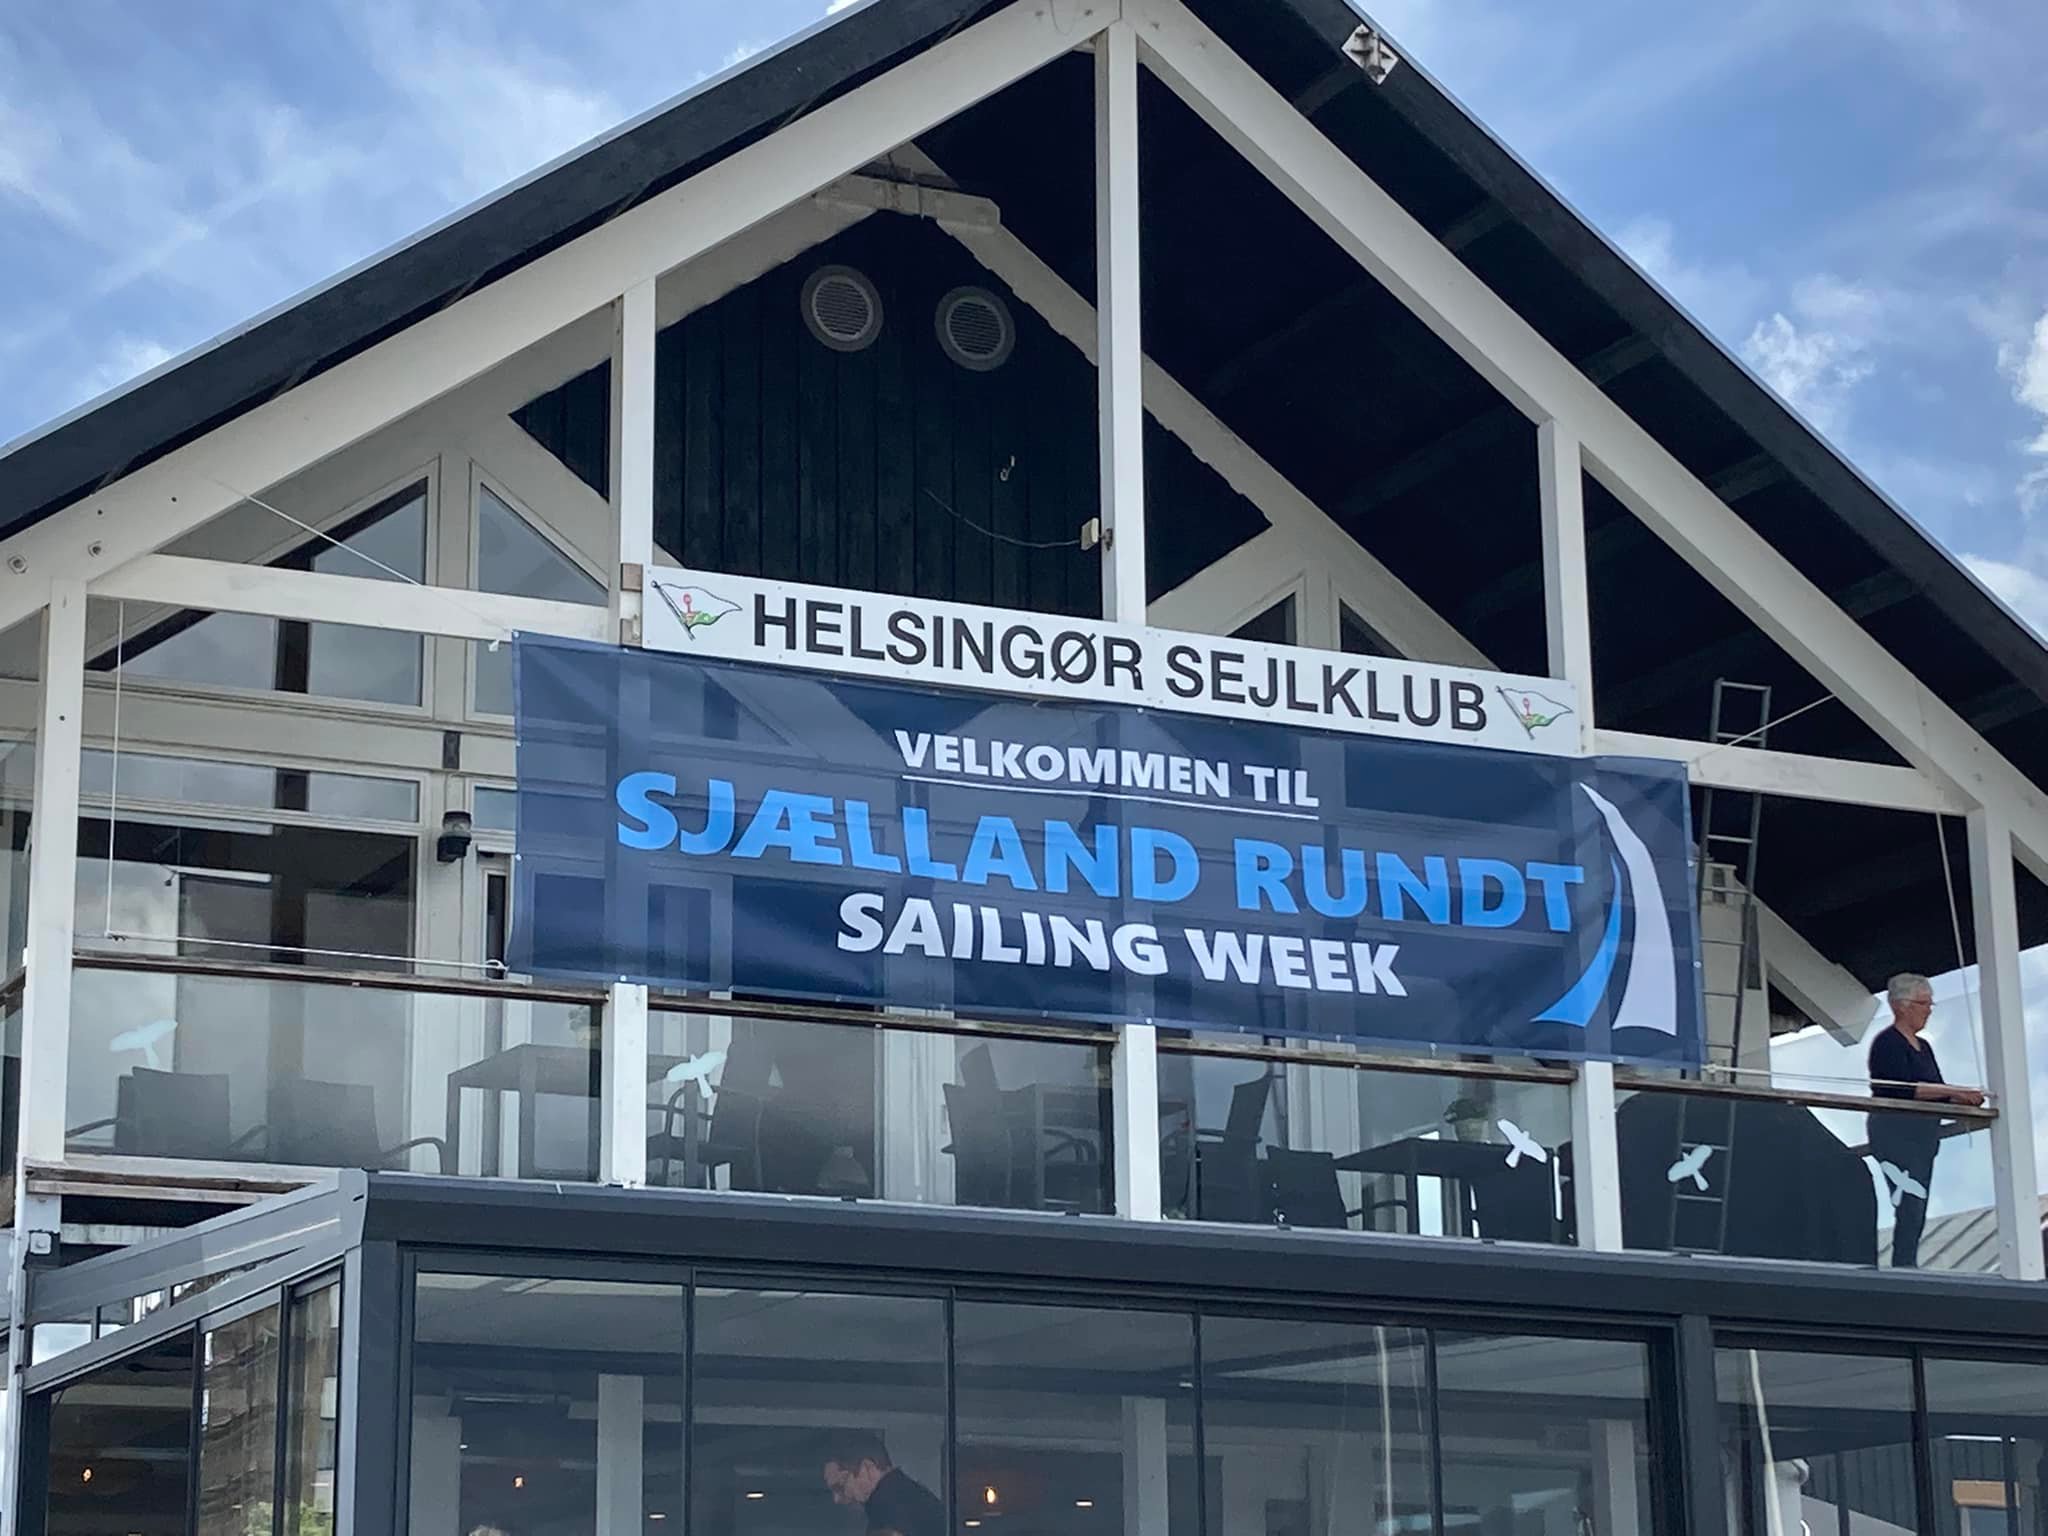 132 både tilmeldt Sjælland Rundt Sailing Week